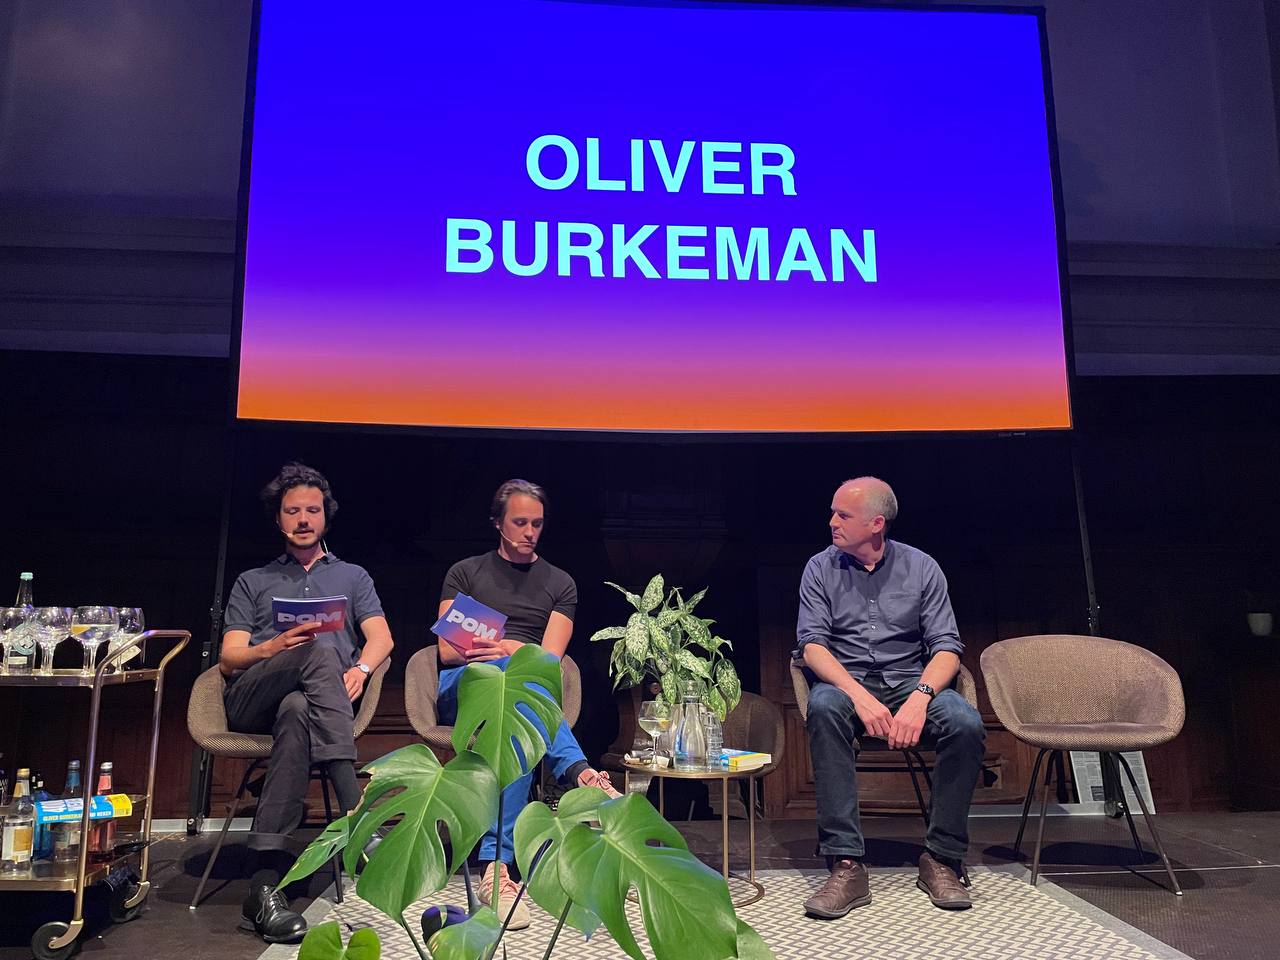 Welja, hier zit ik op een podium met Oliver Burkeman tijdens een POM-event